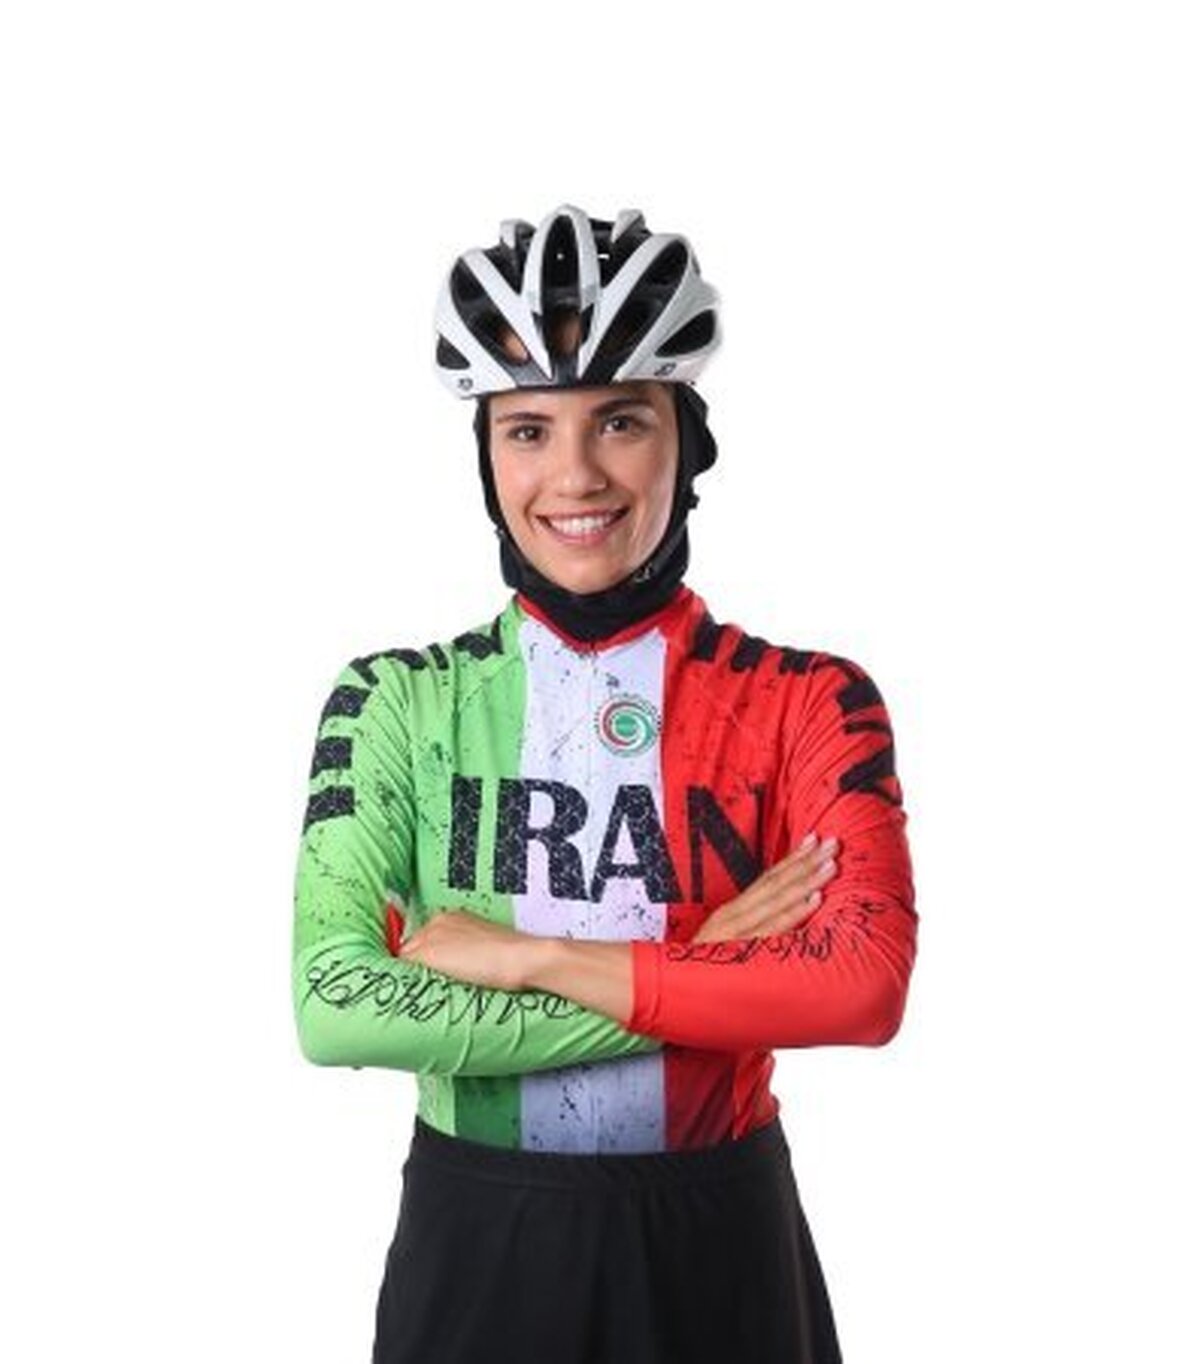 پایان مرحله اول اسکیت سرعت دسته آزاد دختران کشور با دو مدال برای خوزستان